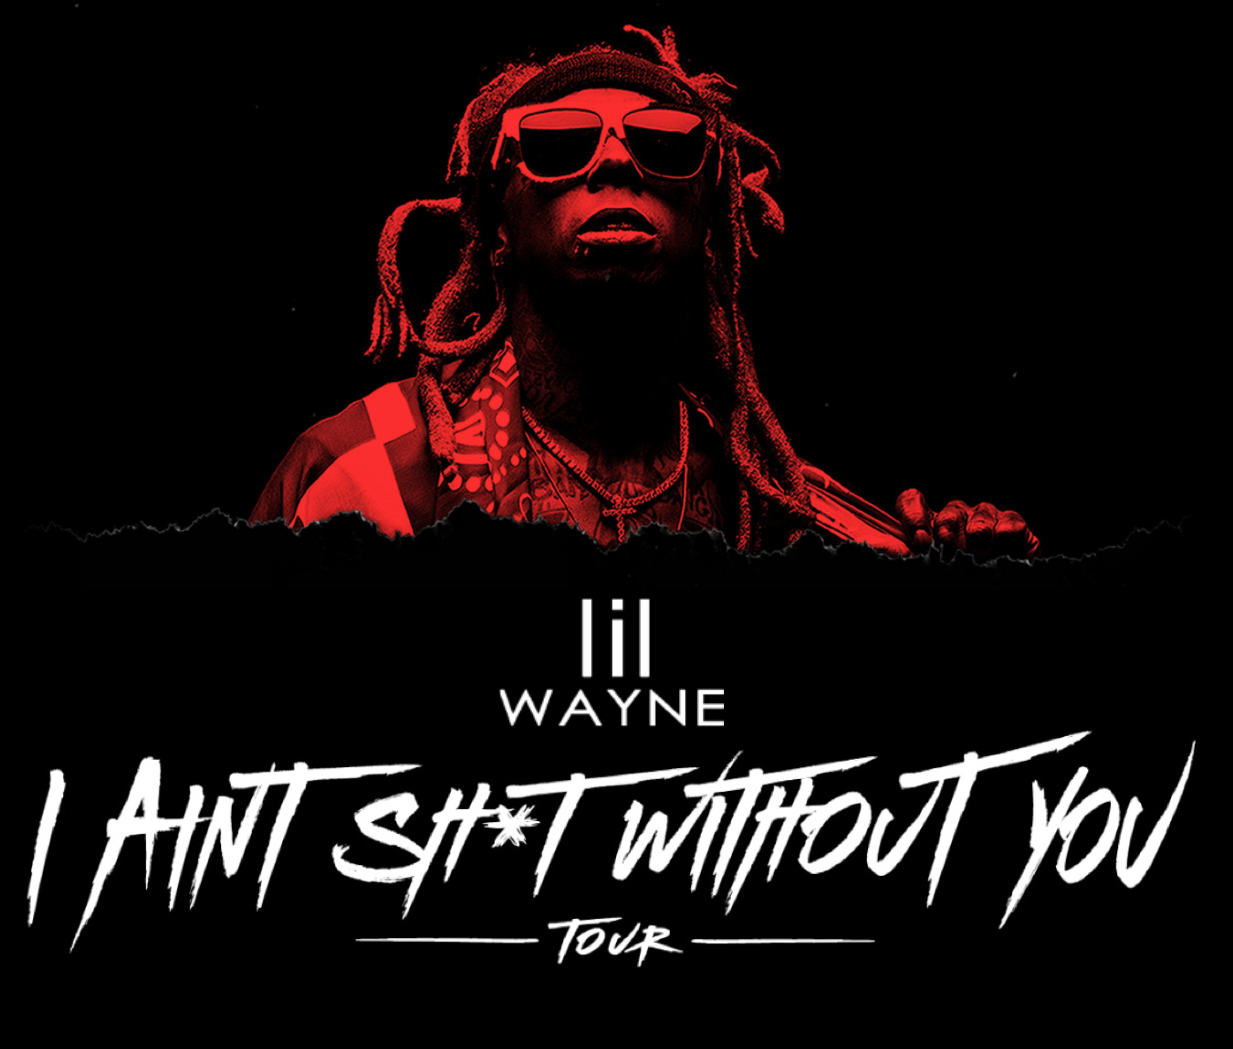 Lil Wayne Announces ‘I Ain’t Sh*t Without You’ Tour1233 x 1049